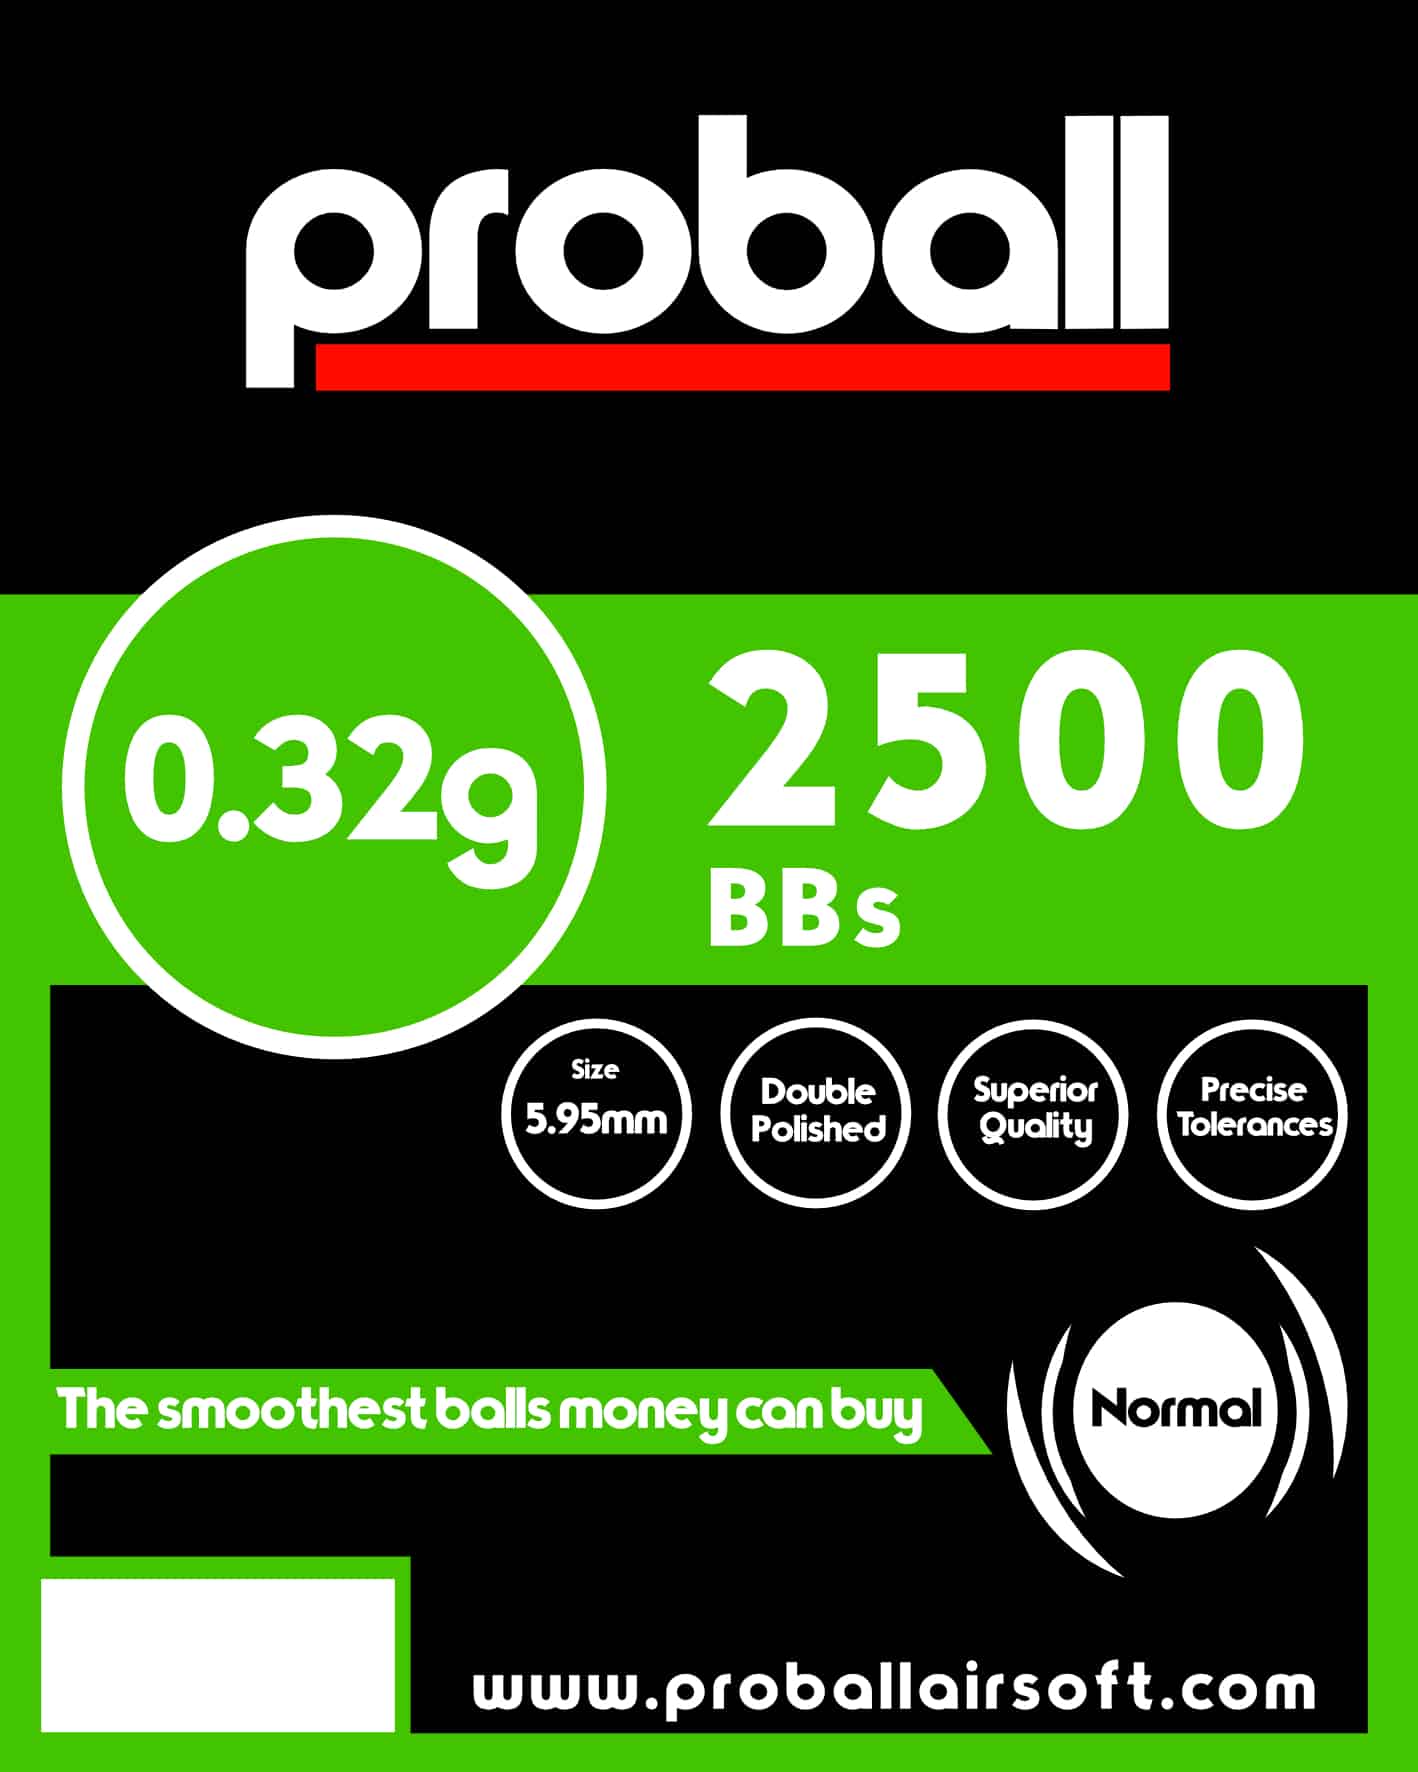 Proball 0.32g high grade bag of 2500